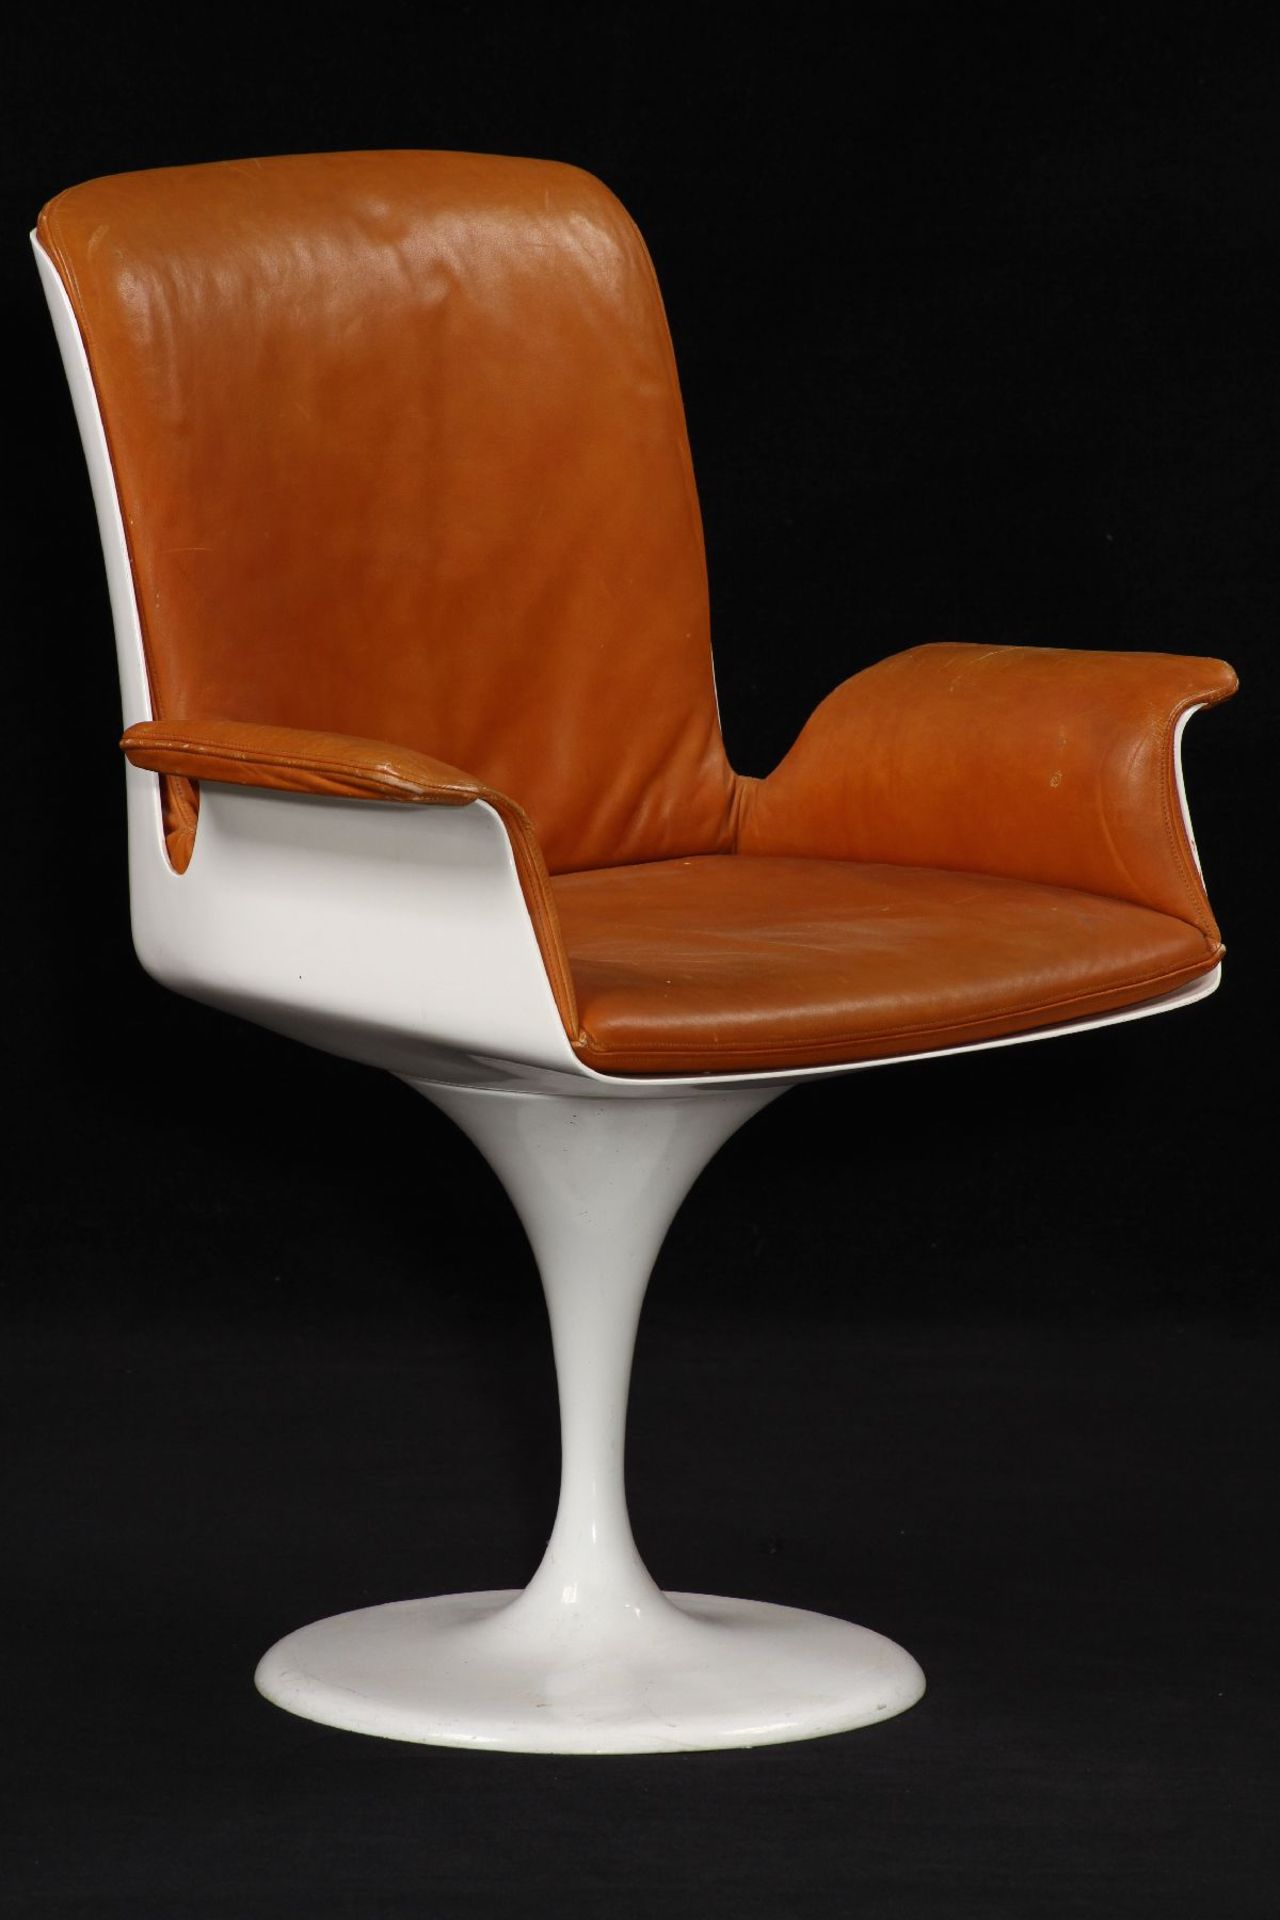 Tisch mit 4 Stühlen, "Herman Miller", um 1965/70, typische Formen der angehenden 60er Jahre nach - Bild 5 aus 6